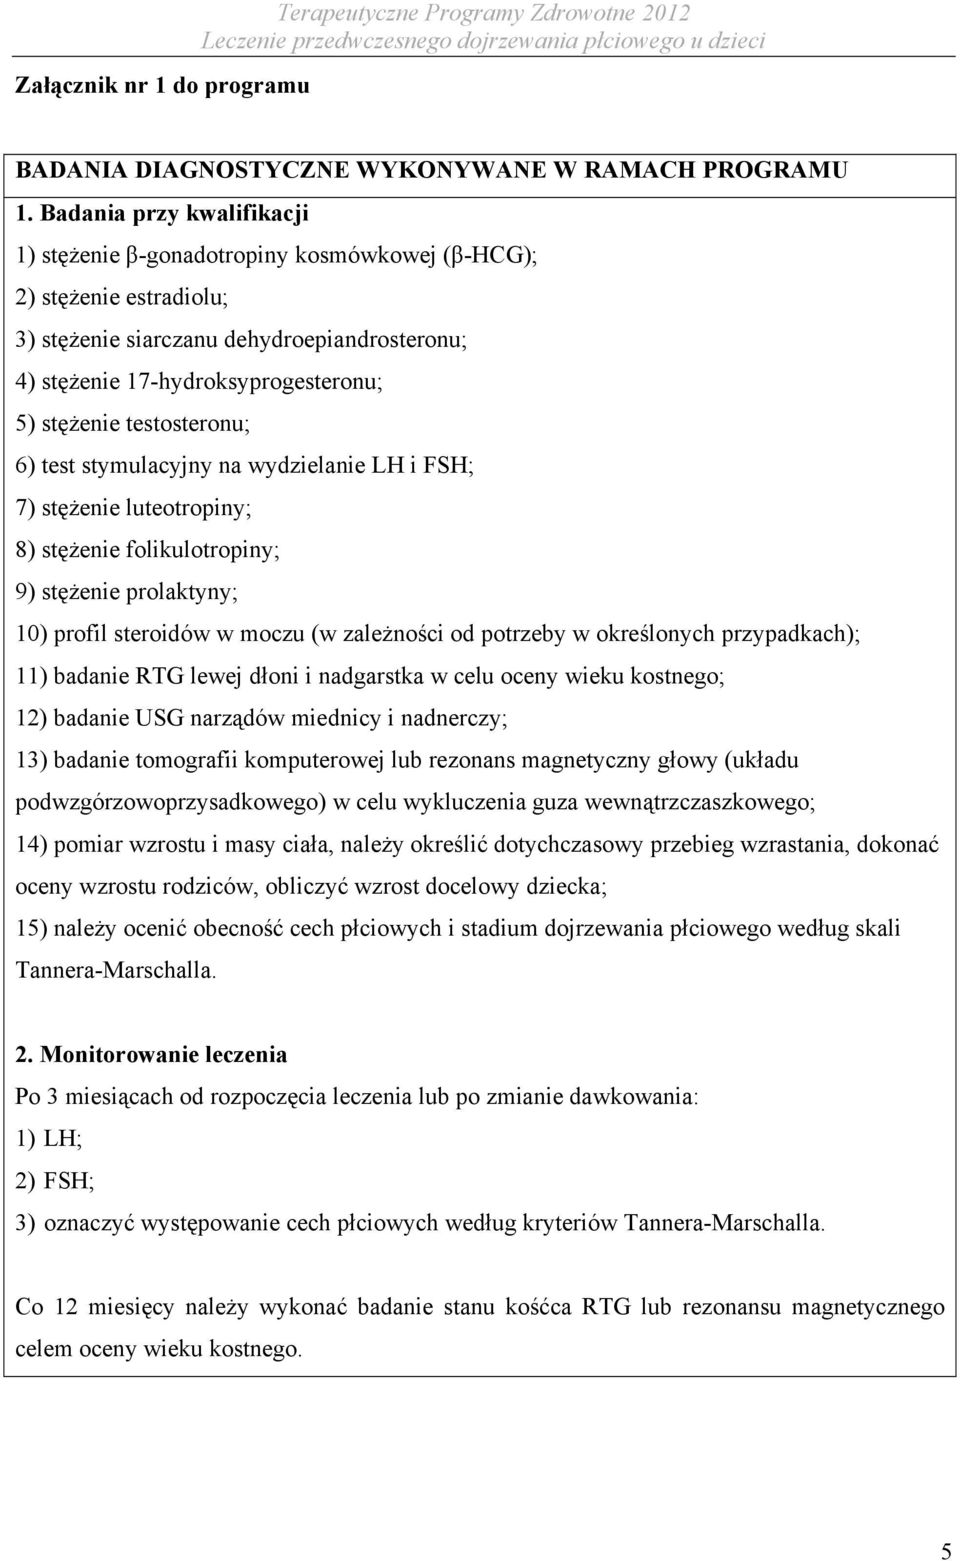 testosteronu; 6) test stymulacyjny na wydzielanie LH i FSH; 7) stężenie luteotropiny; 8) stężenie folikulotropiny; 9) stężenie prolaktyny; 10) profil steroidów w moczu (w zależności od potrzeby w